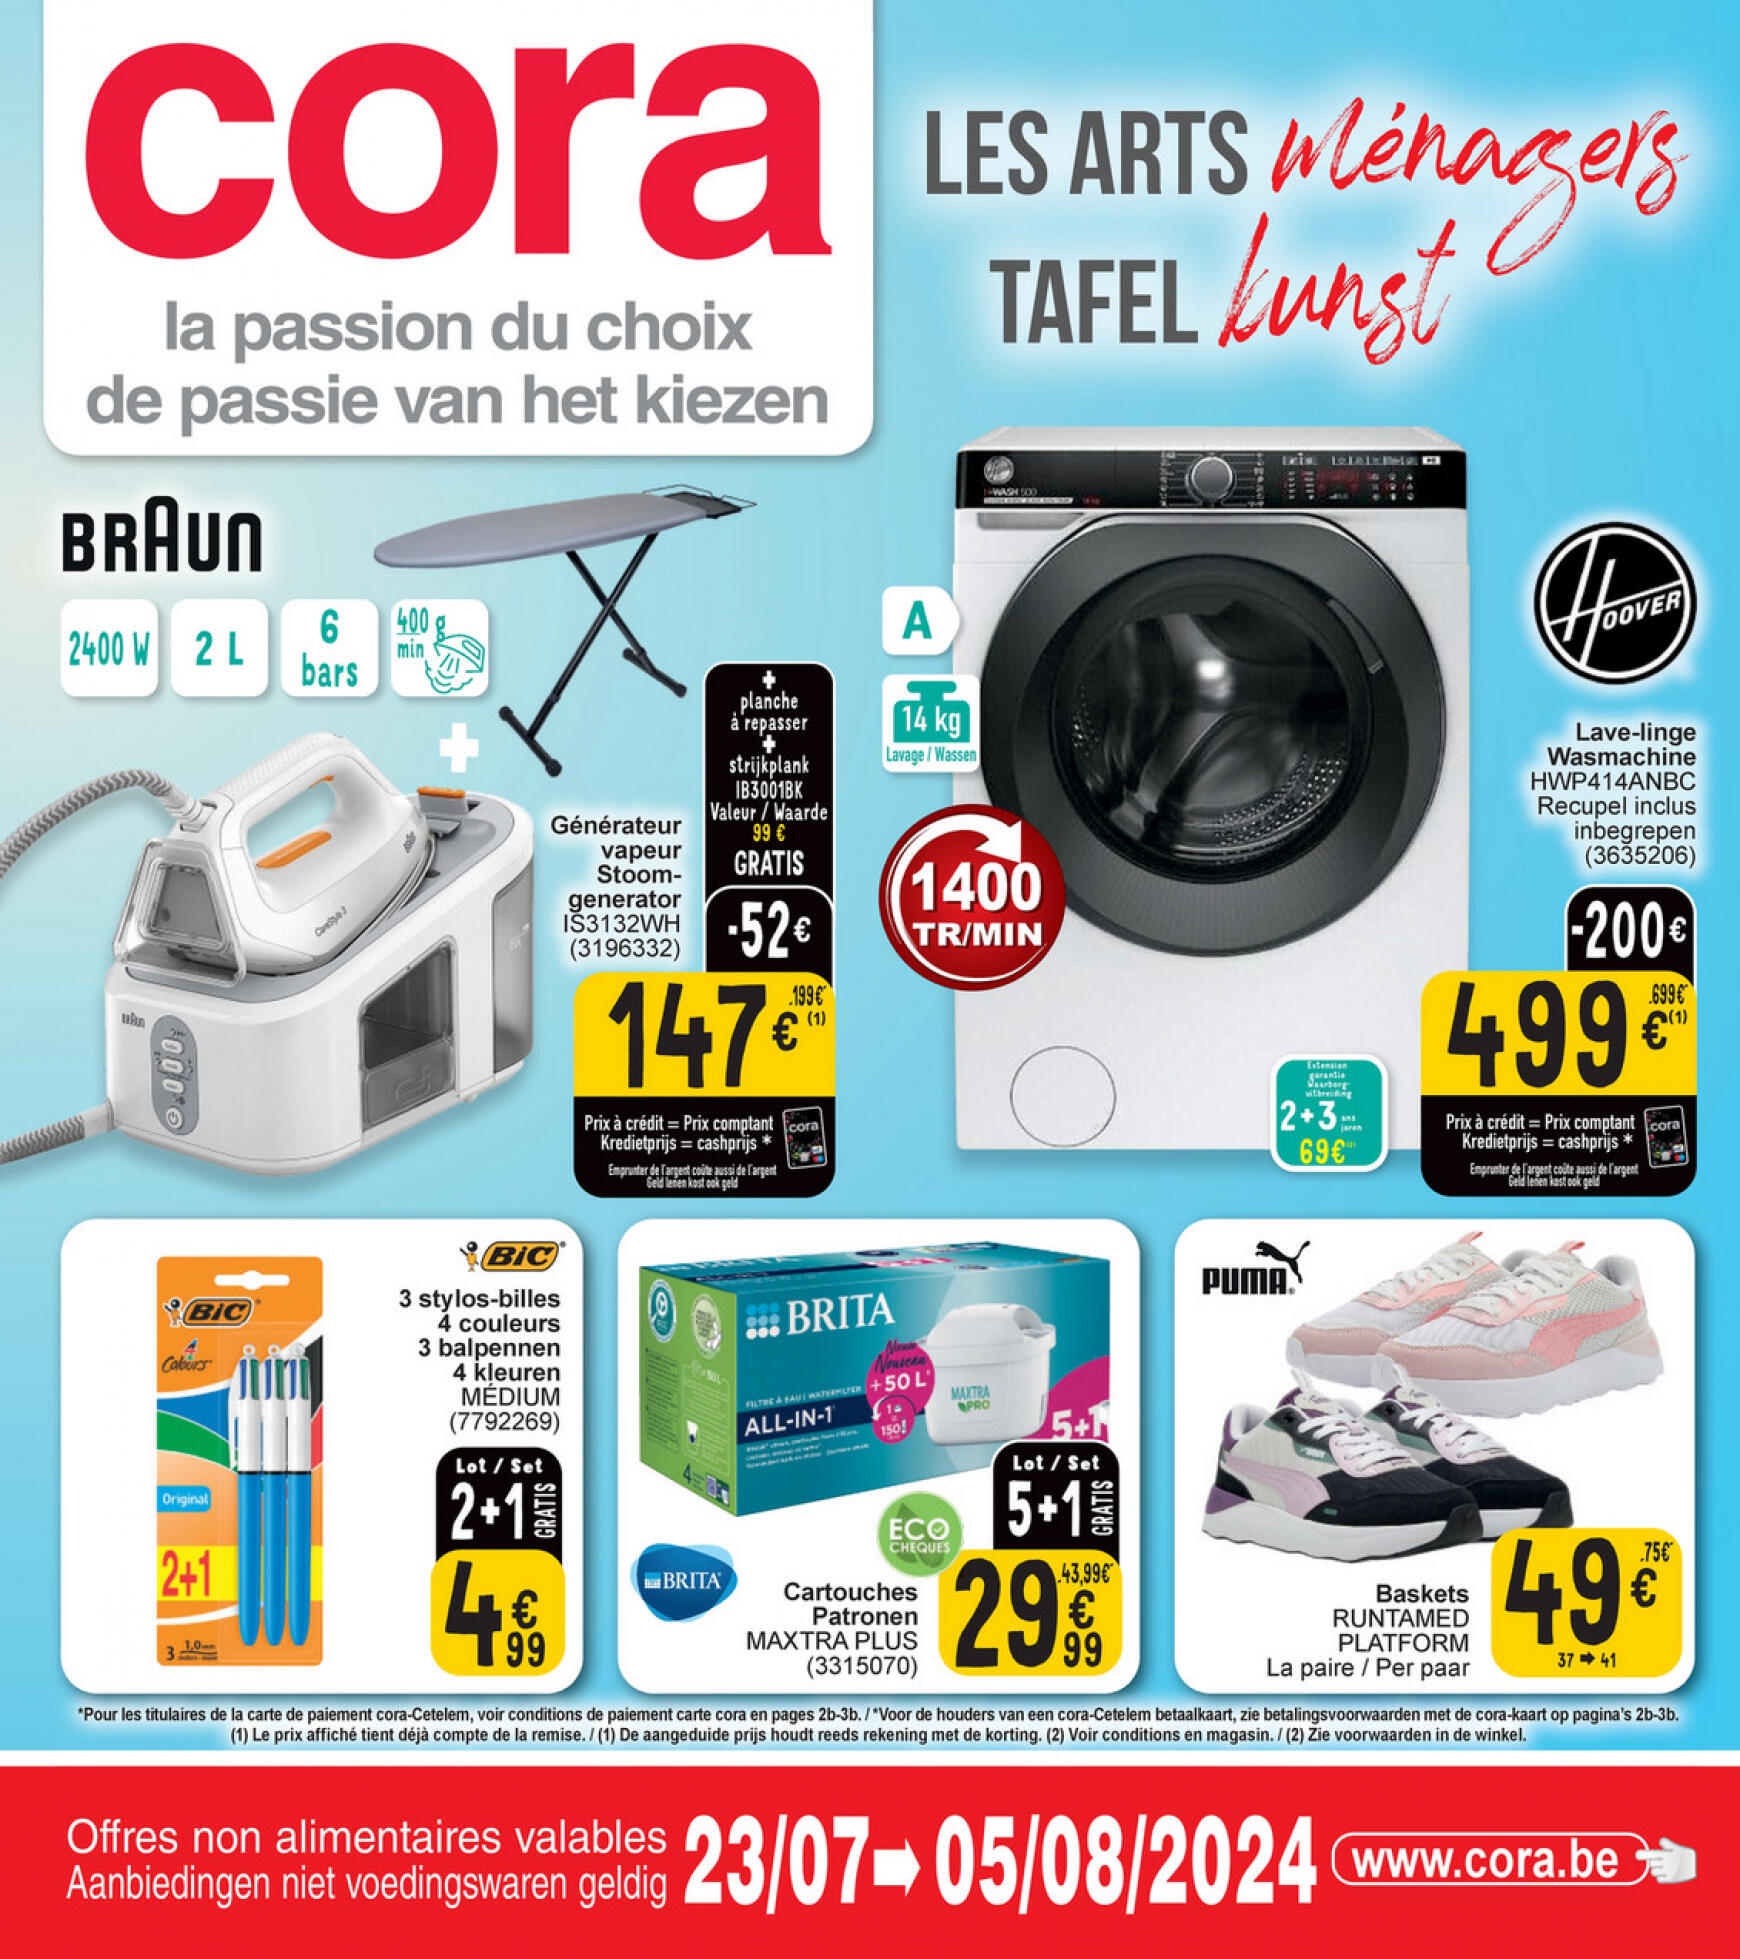 cora - Cora - Les arts ménagers-Tafelkunst folder huidig 23.07. - 05.08.